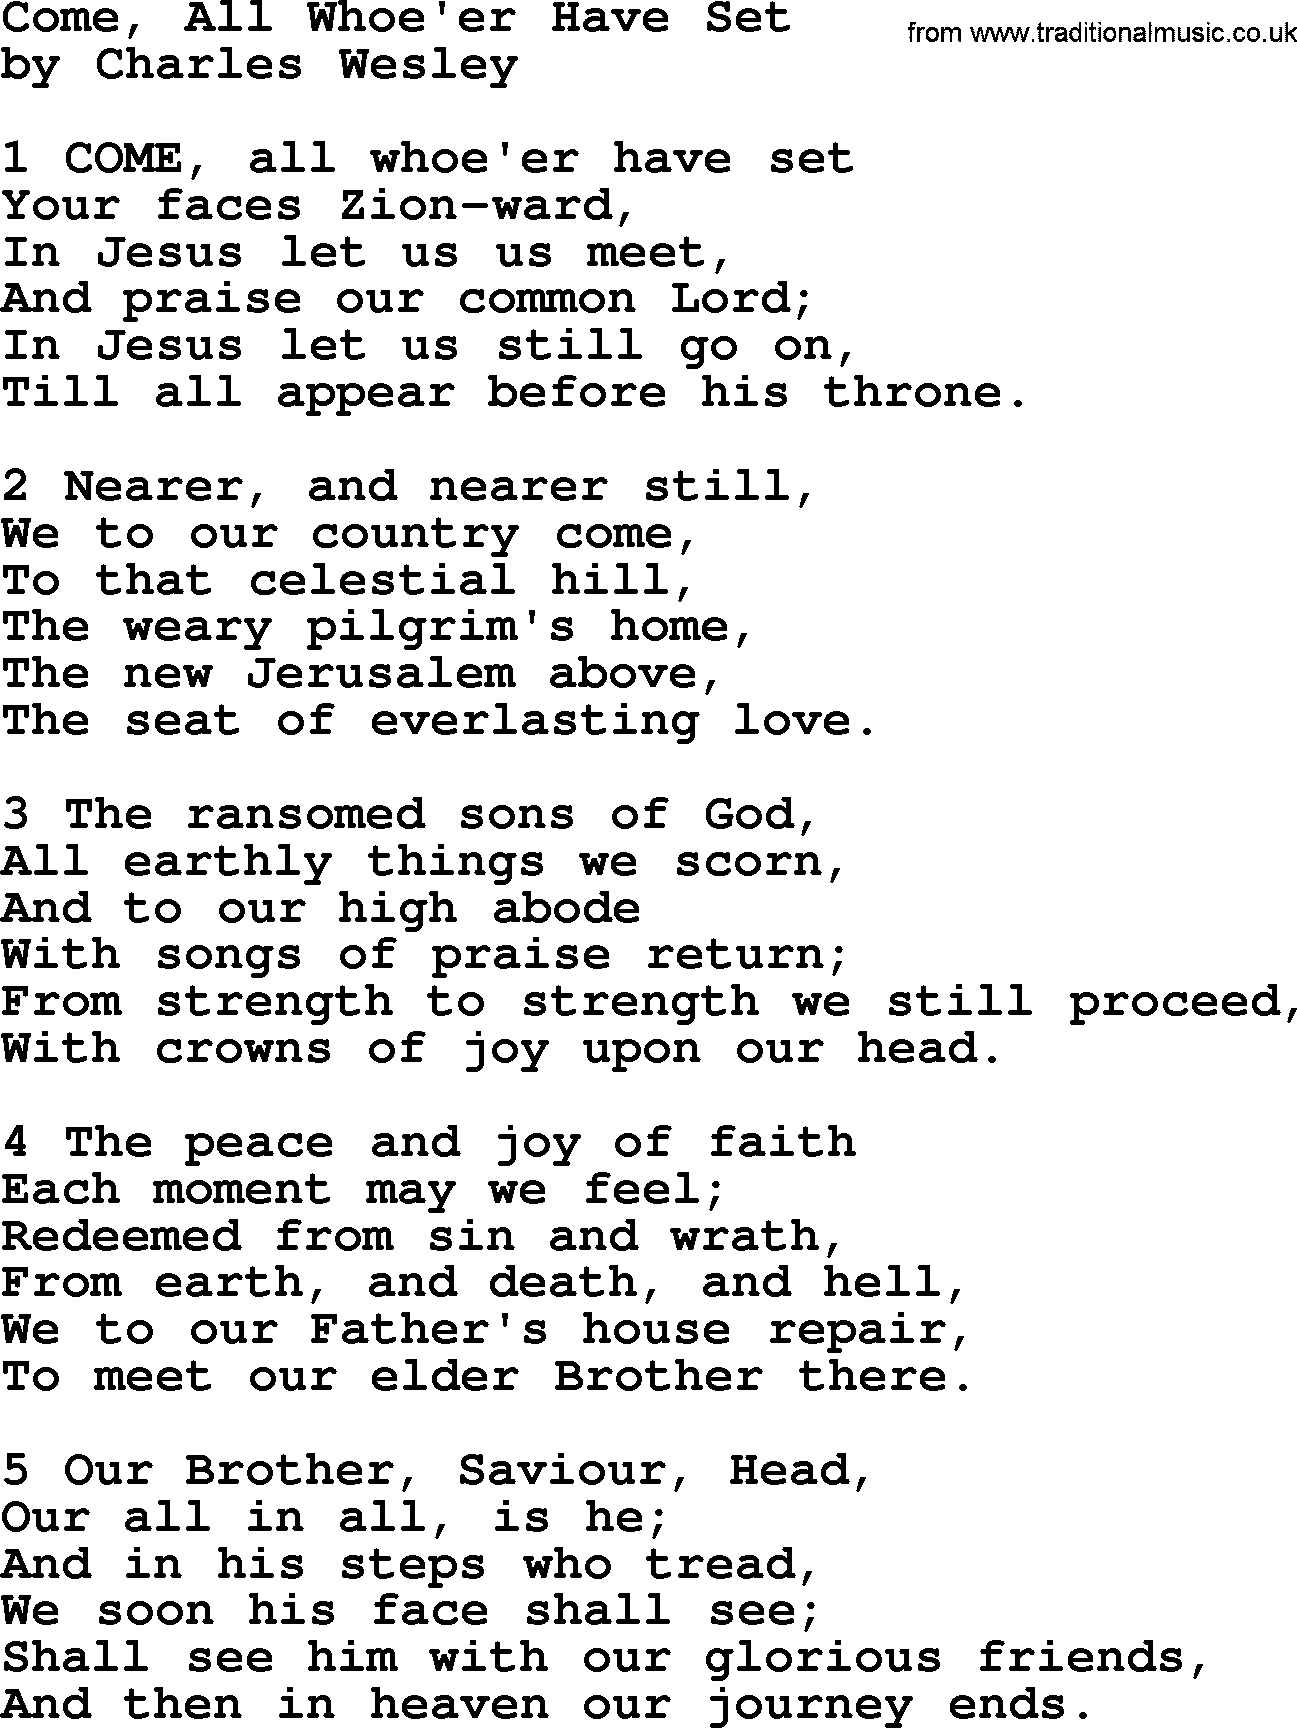 Charles Wesley hymn: Come, All Whoe'er Have Set, lyrics